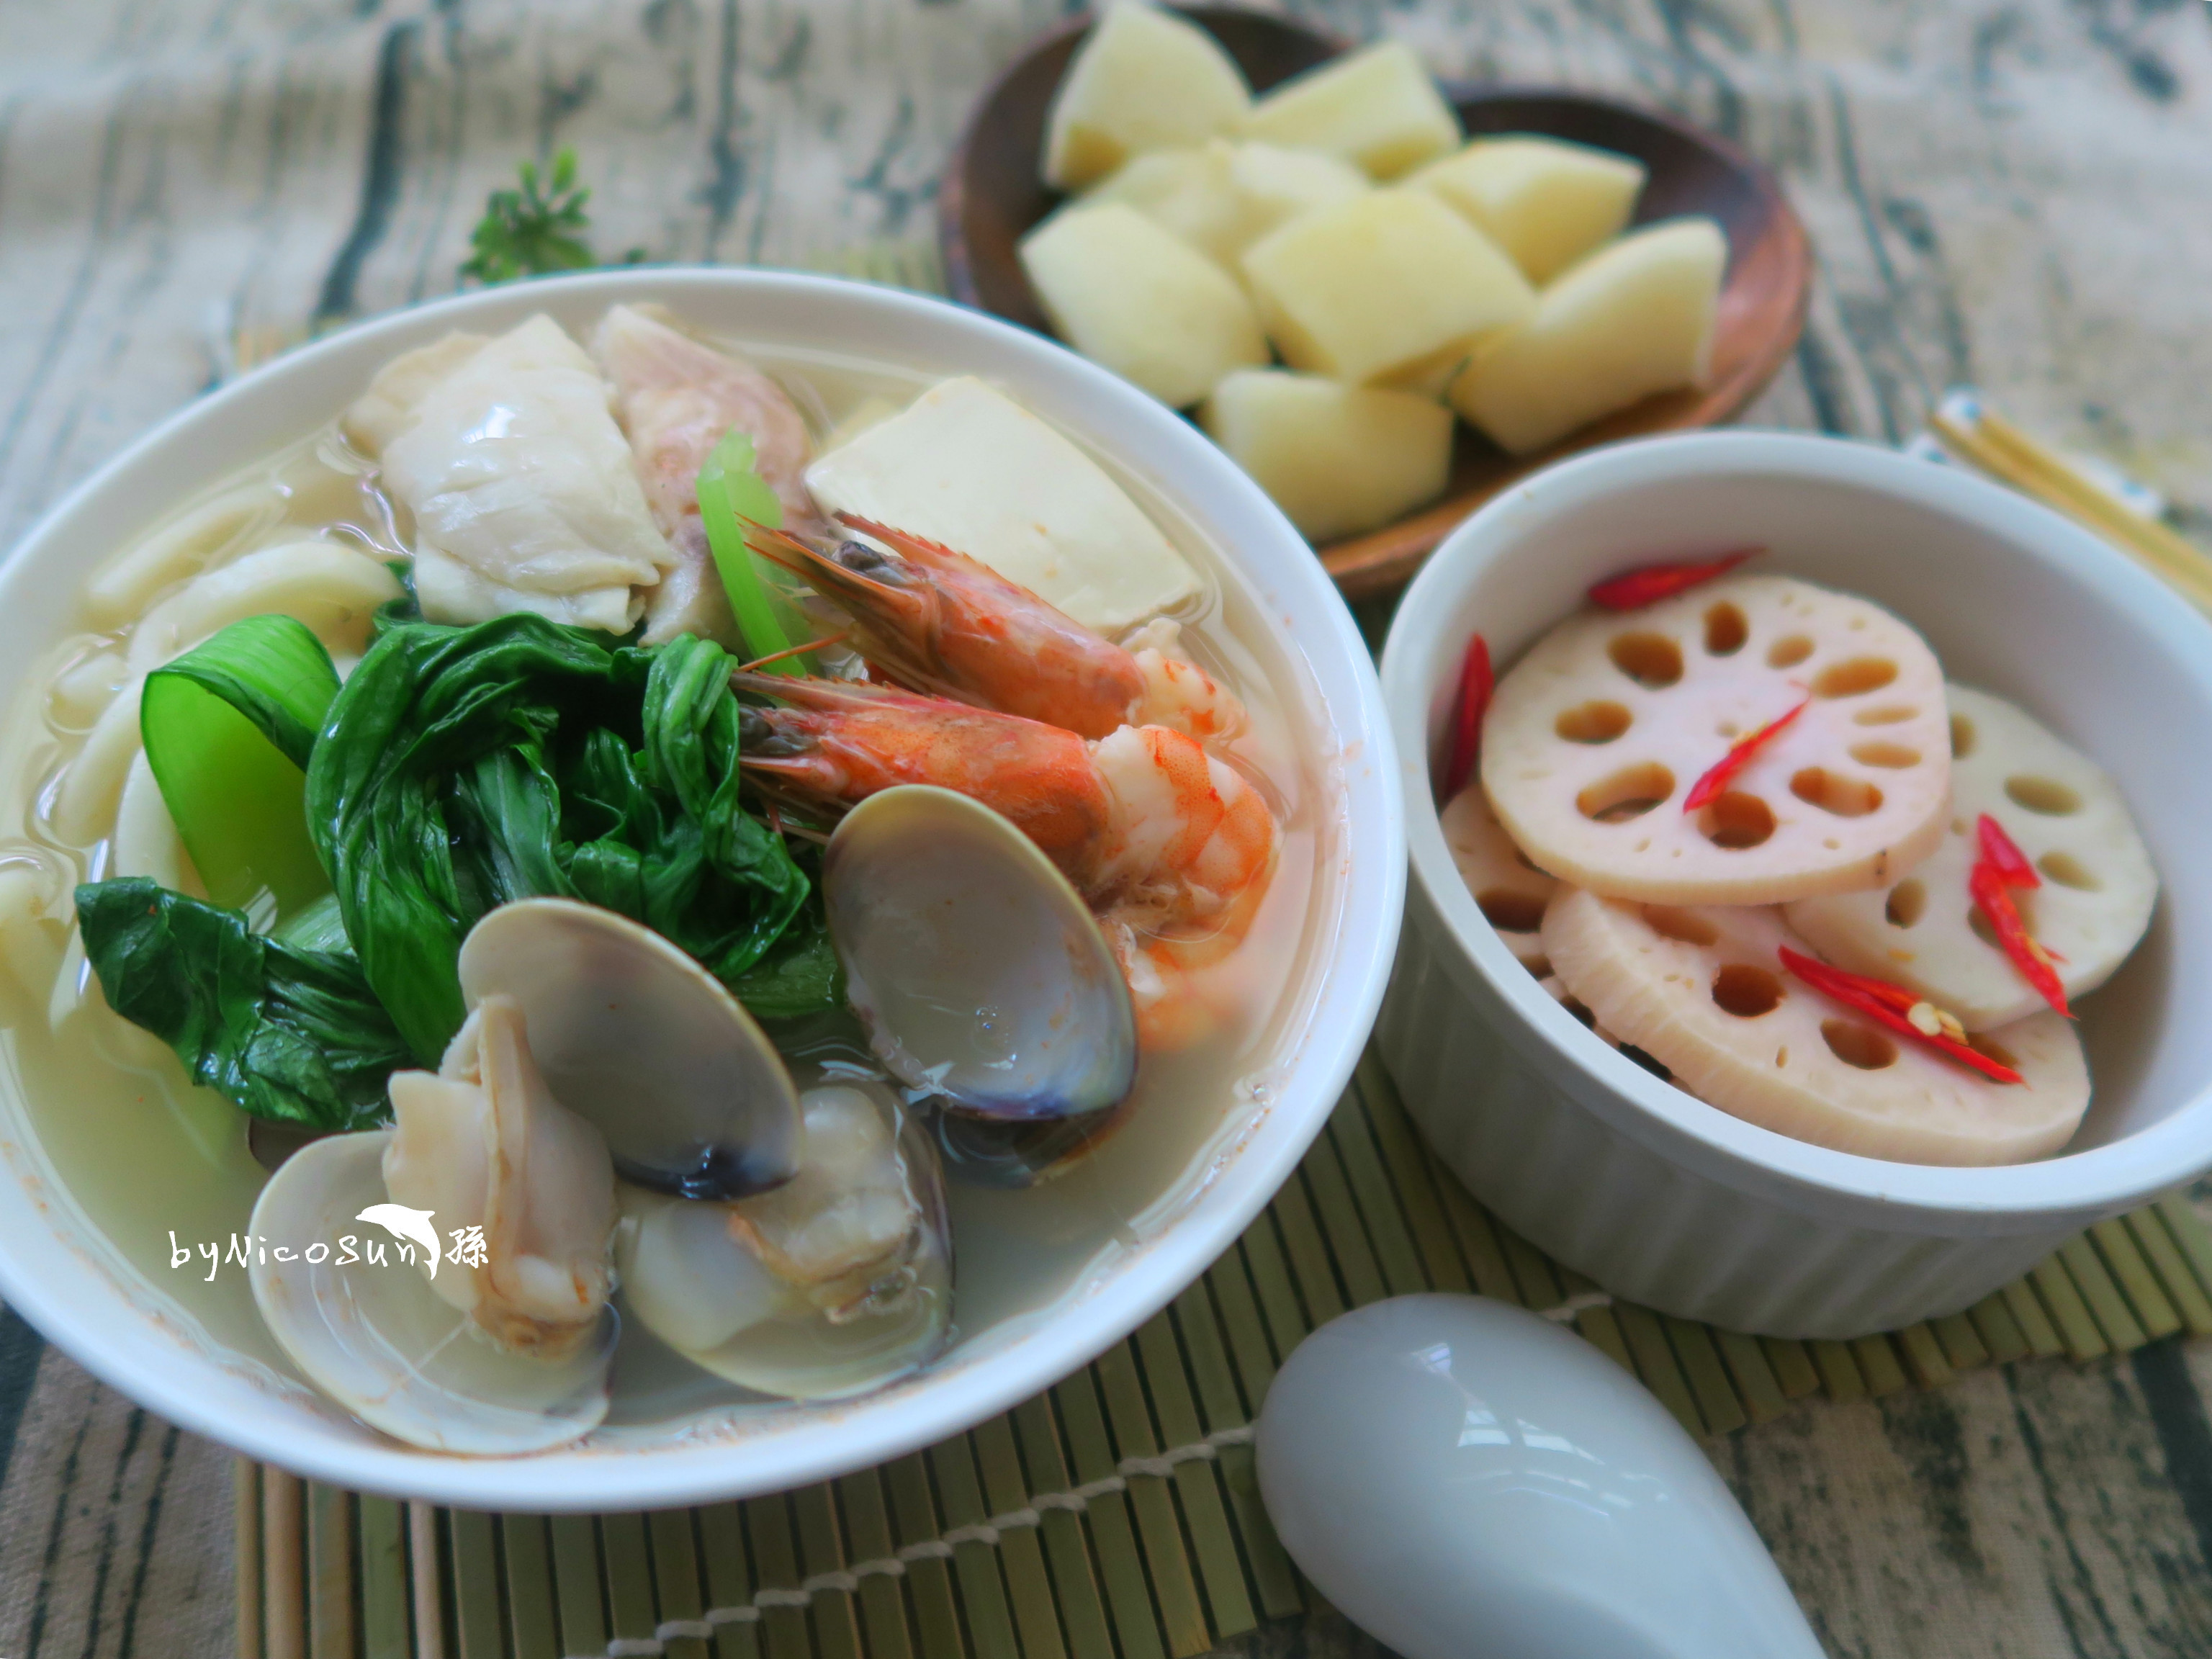 海鮮豆腐鍋燒麵+涼拌蓮藕+水梨